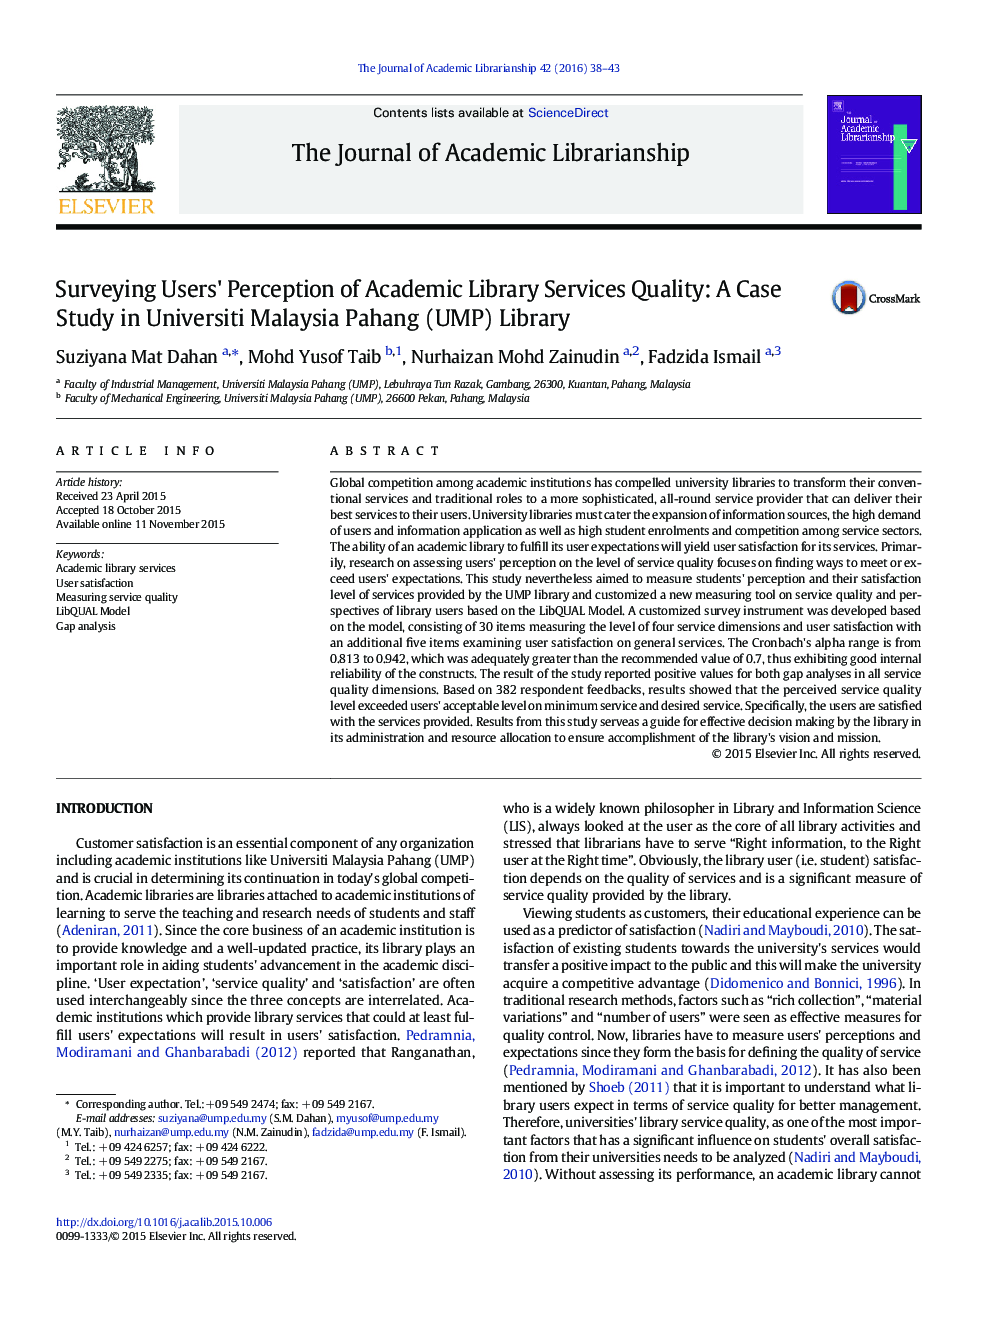 ادراک کاربران بررسی از علمی خدمات کتابخانه کیفیت: مطالعه موردی در دانشگاه مالزی پاهانگ (UMP) کتابخانه